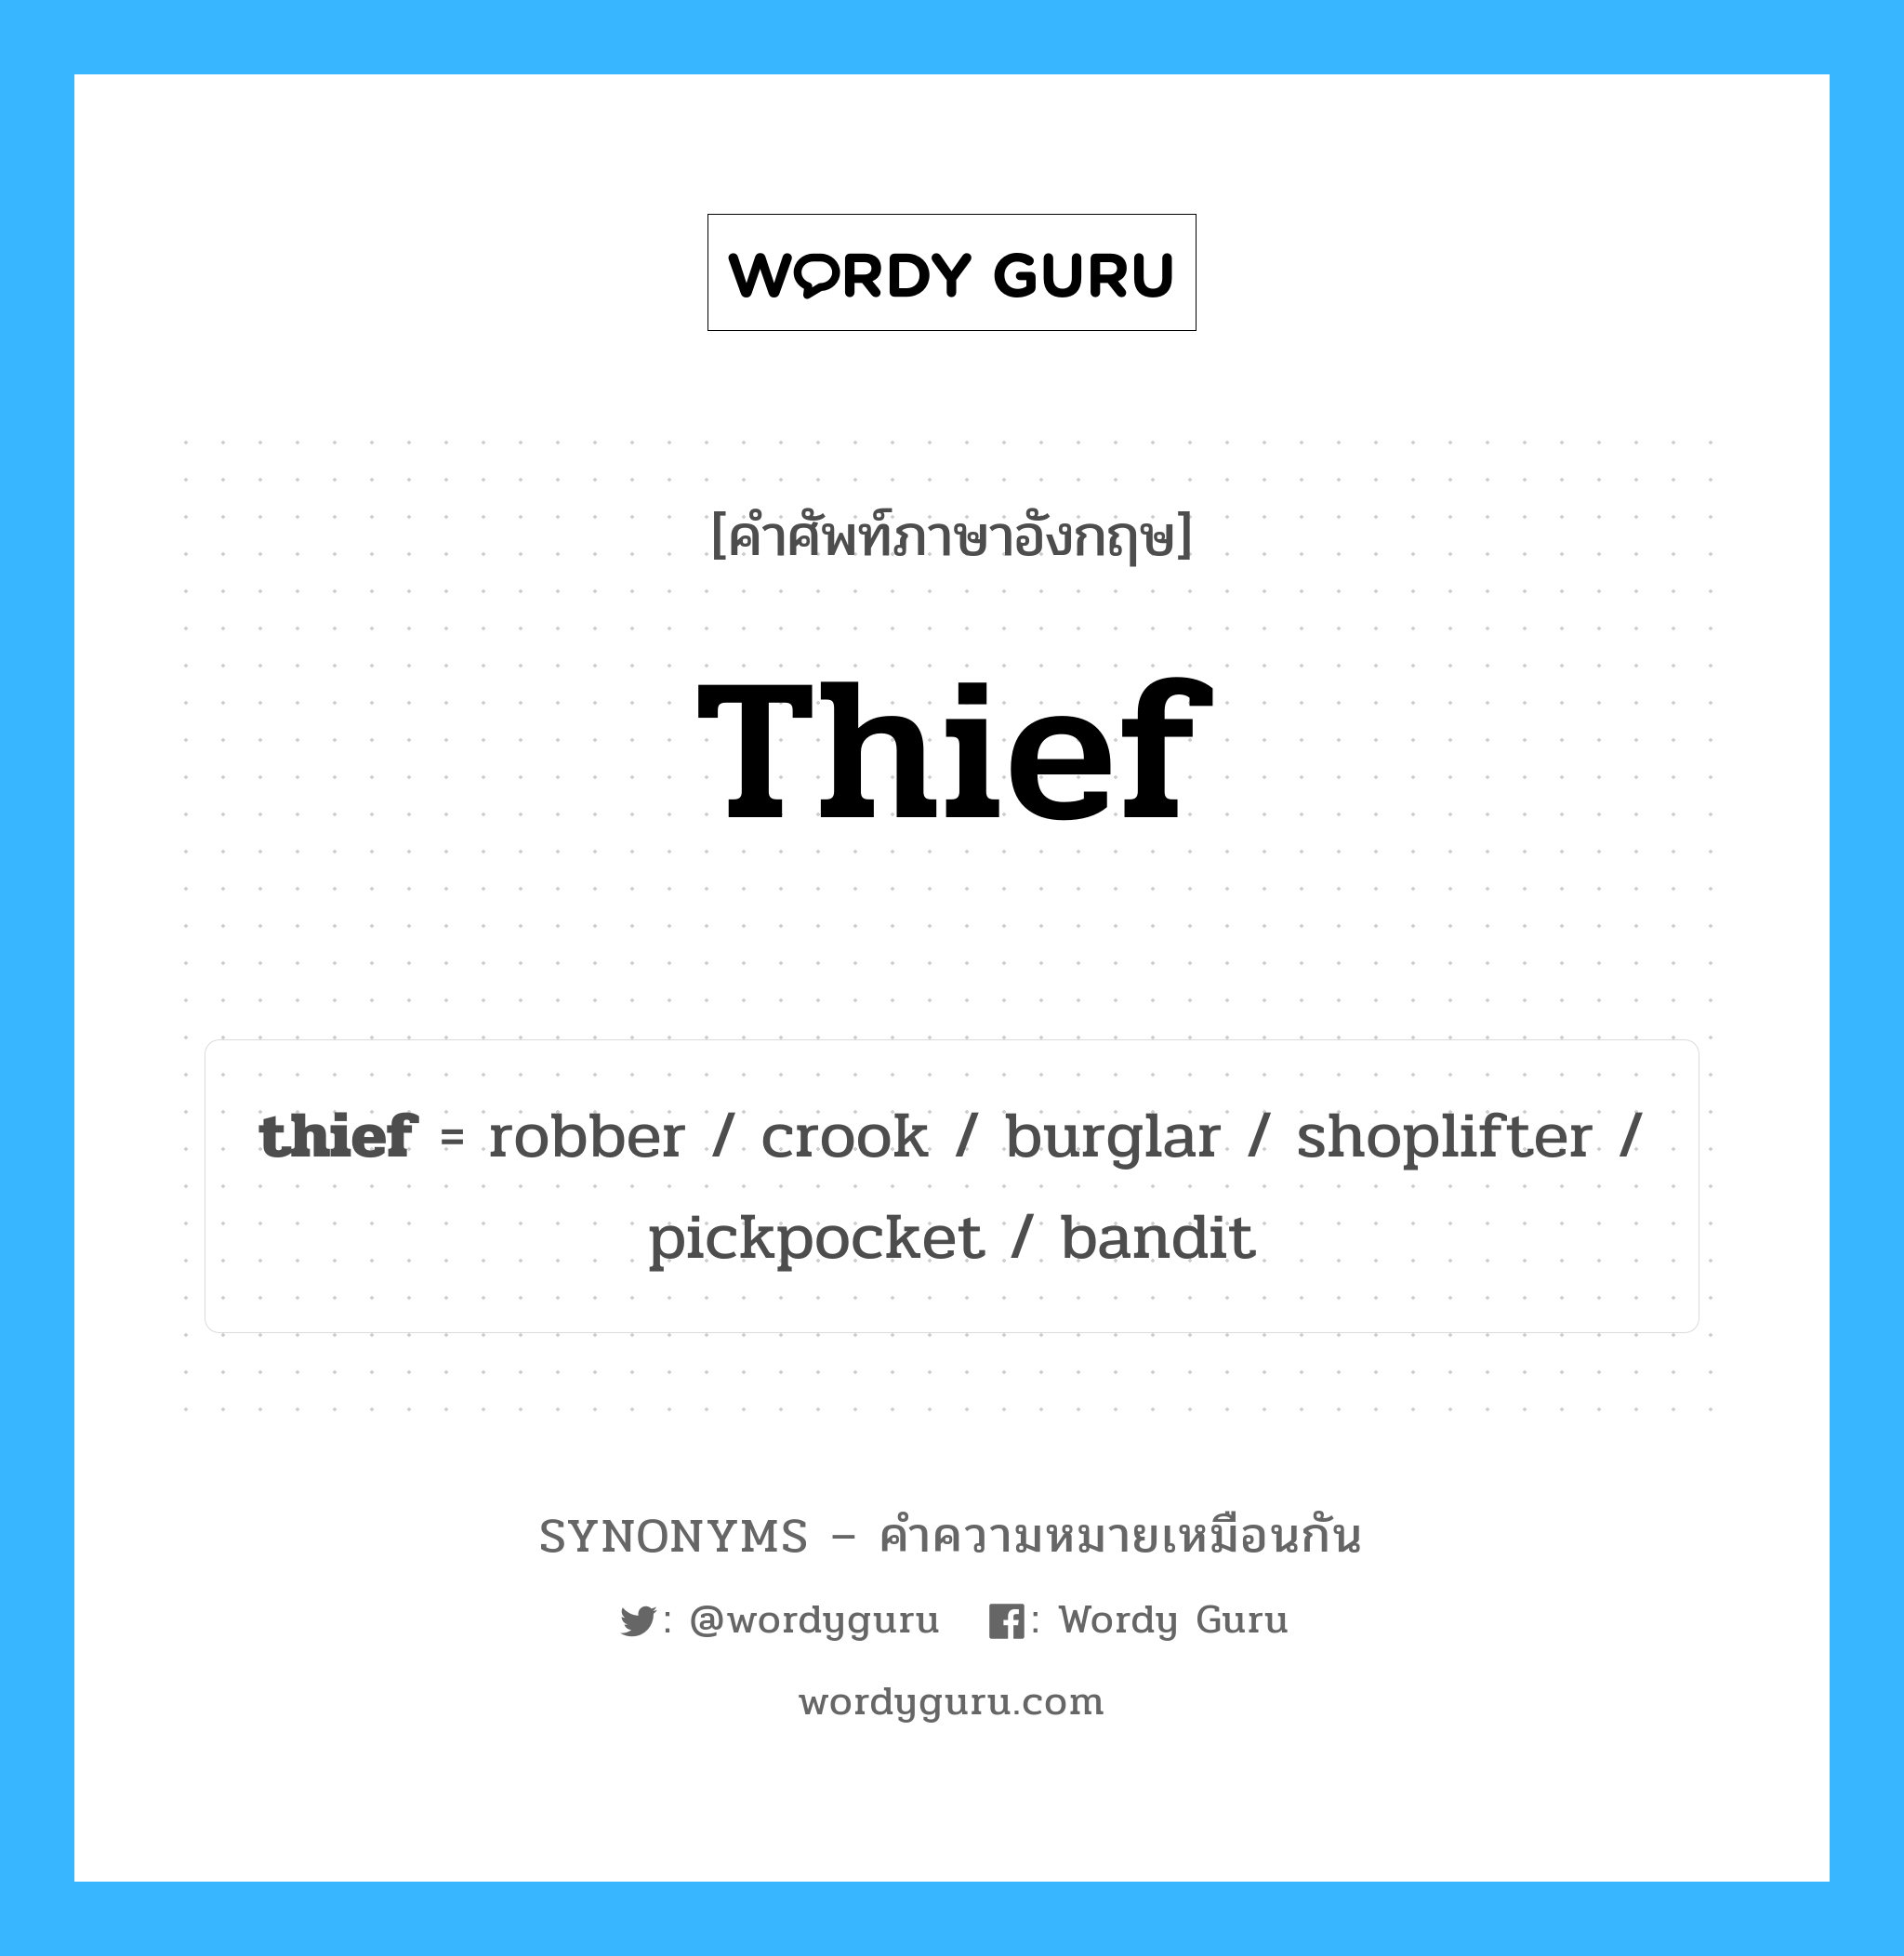 robber เป็นหนึ่งใน thief และมีคำอื่น ๆ อีกดังนี้, คำศัพท์ภาษาอังกฤษ robber ความหมายคล้ายกันกับ thief แปลว่า โม่ง หมวด thief